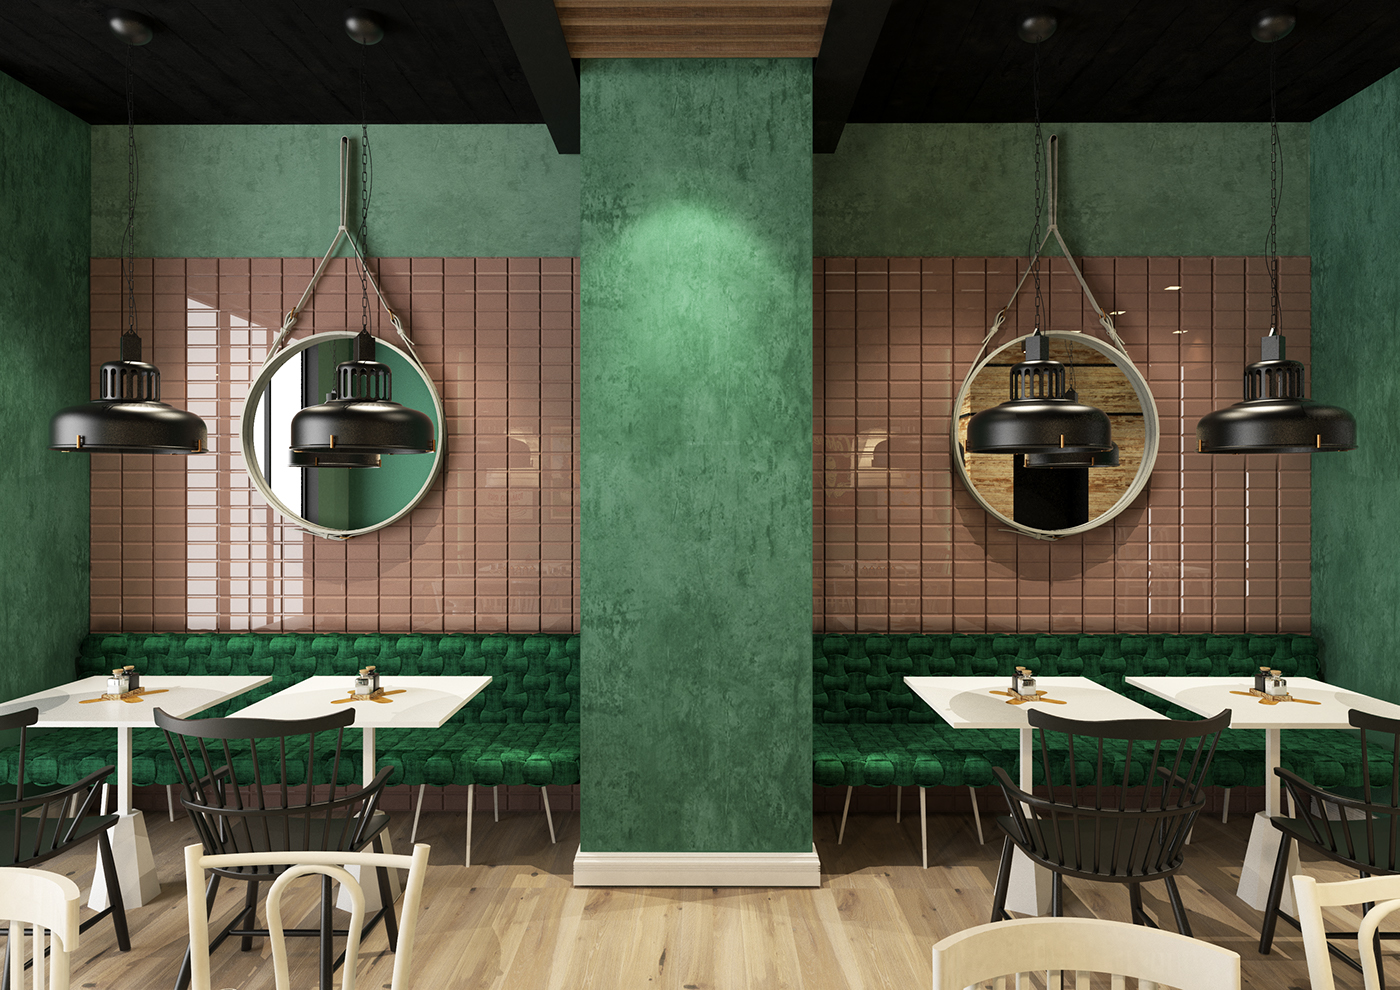 restaurant Bistrot mintos modern interiordesign Interior geometry graphic graphicdesign design